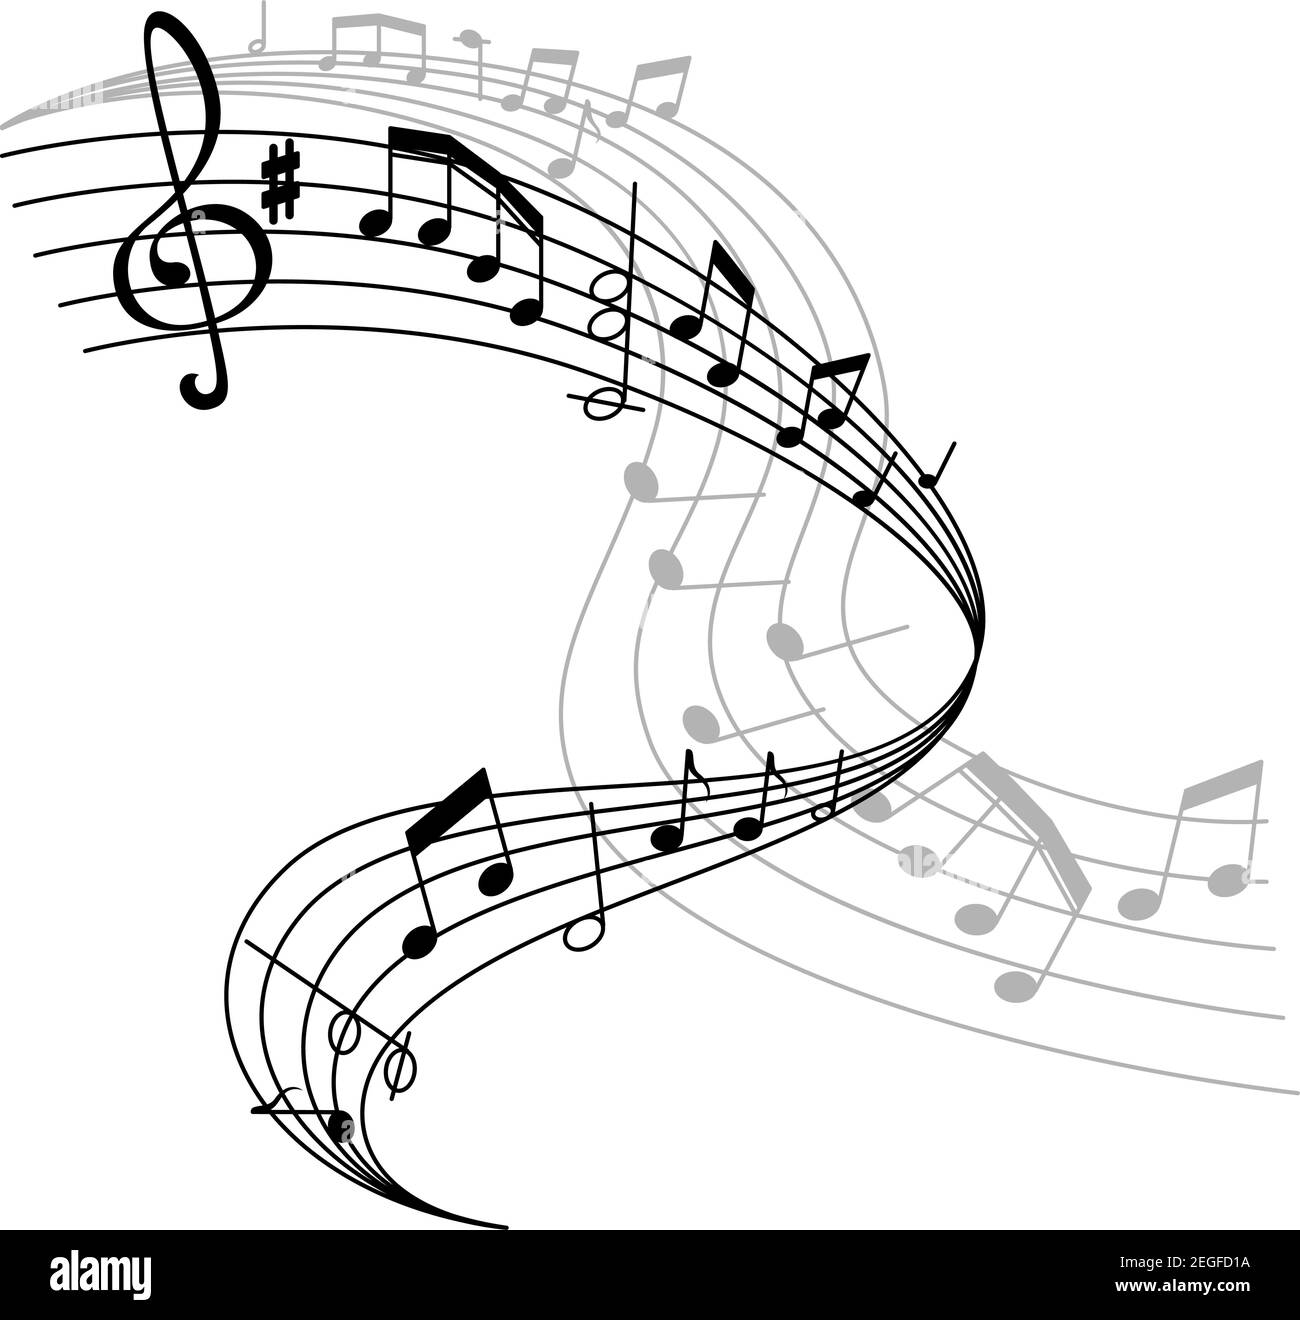 Musikstab oder Musikstave Symbol der Noten und Schlüssel für Musikkonzert. Vektor-Poster-Design von Noten auf Mitarbeiter für Jazz-Nacht oder klassische oper Stock Vektor